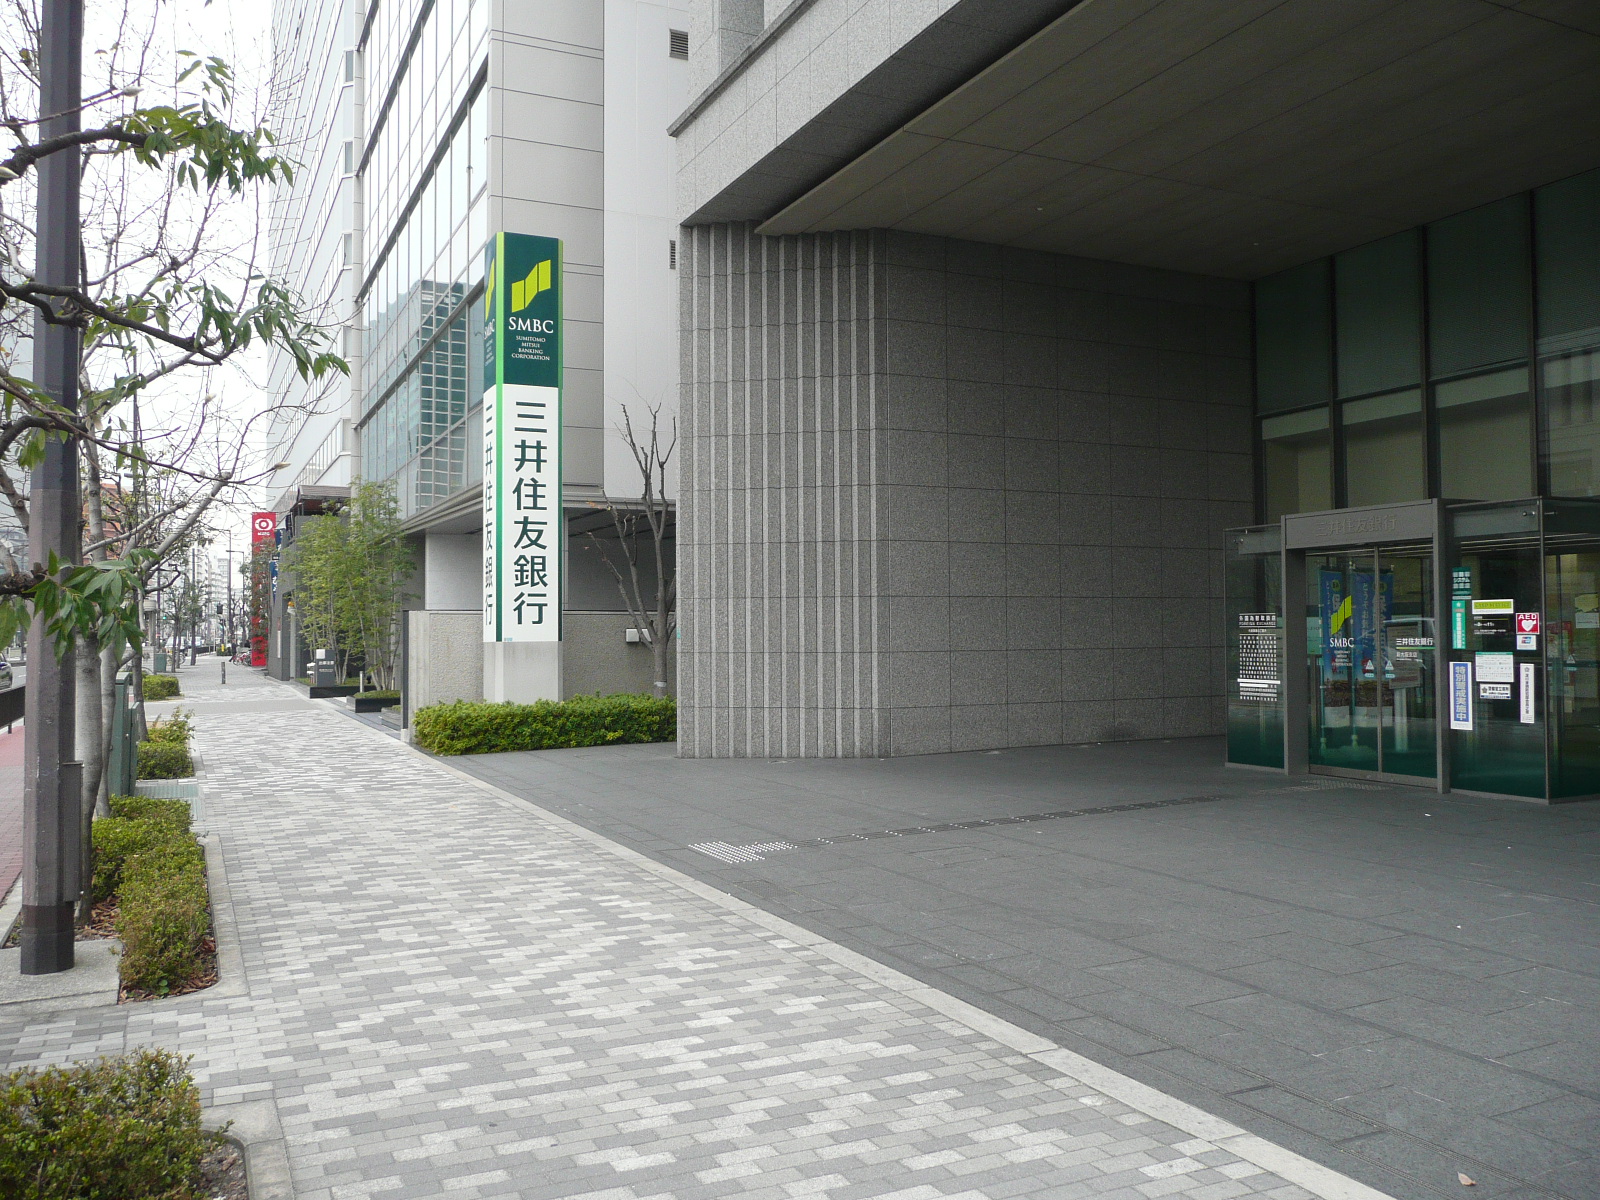 Bank. 552m to Sumitomo Mitsui Banking Corporation Osaka Branch (Bank)